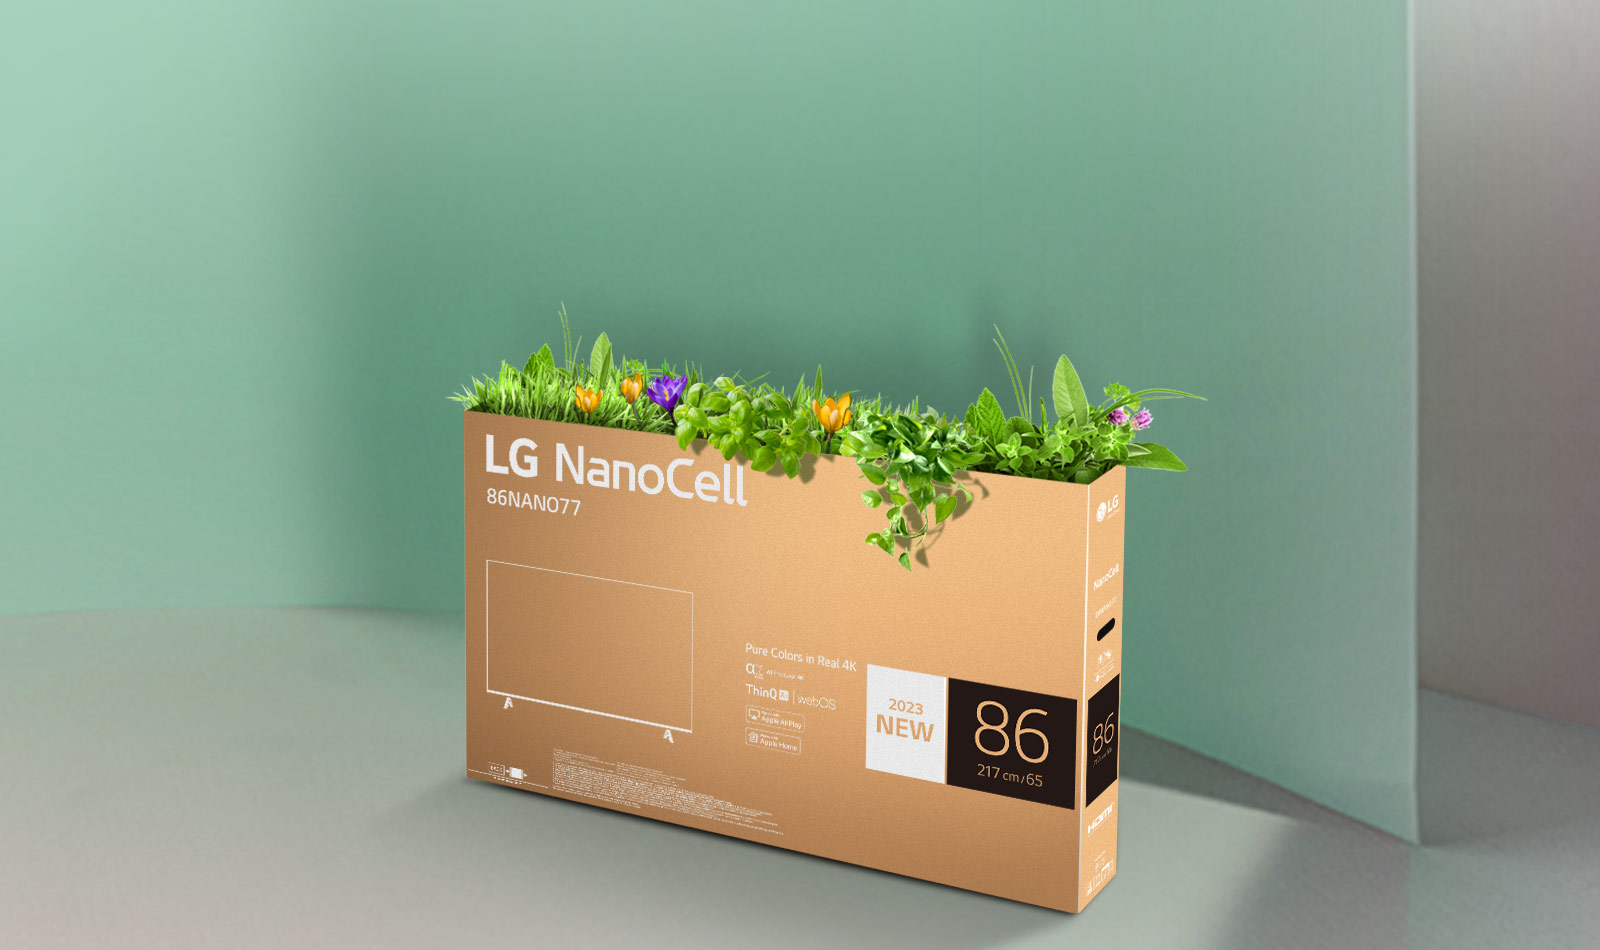 LG NanoCell 電視的可回收包裝盒頂部長出花草。